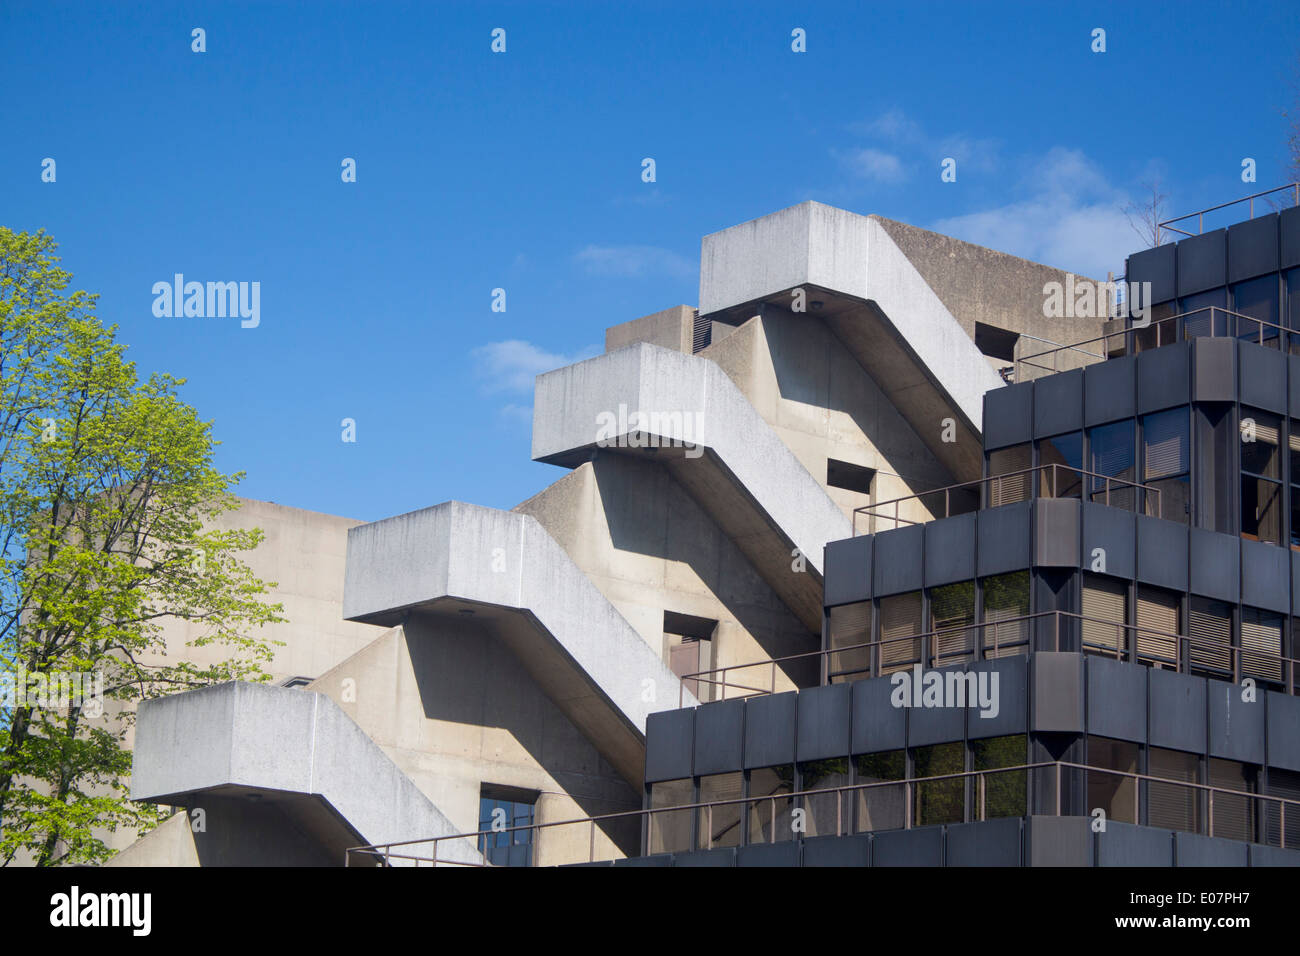 Institut d'éducation de l'Université de Londres Bloomsbury Londres Angleterre Royaume-uni béton architecture brutaliste Banque D'Images